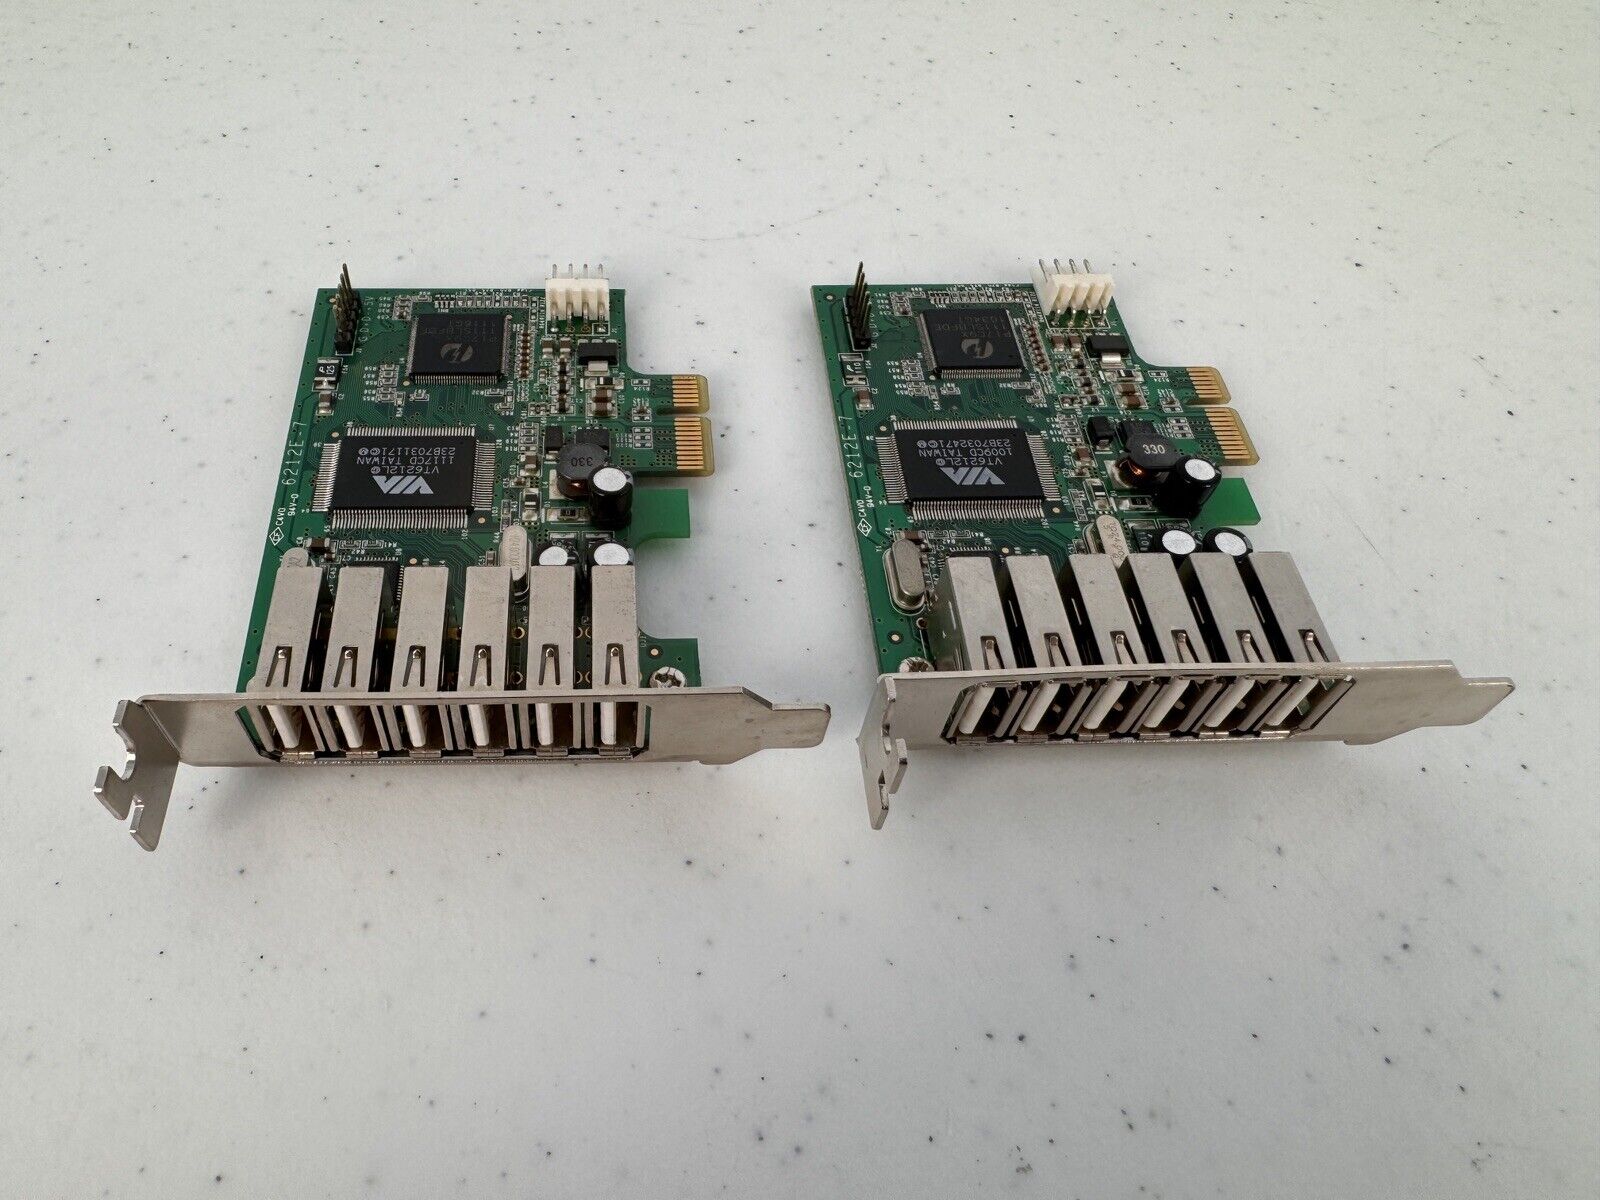 LOT OF 2 PEXUSB7LP STARTECH 7 PORT PCI EXPRESS HIGH SPEED USB 2.0 ADAPTER CARD